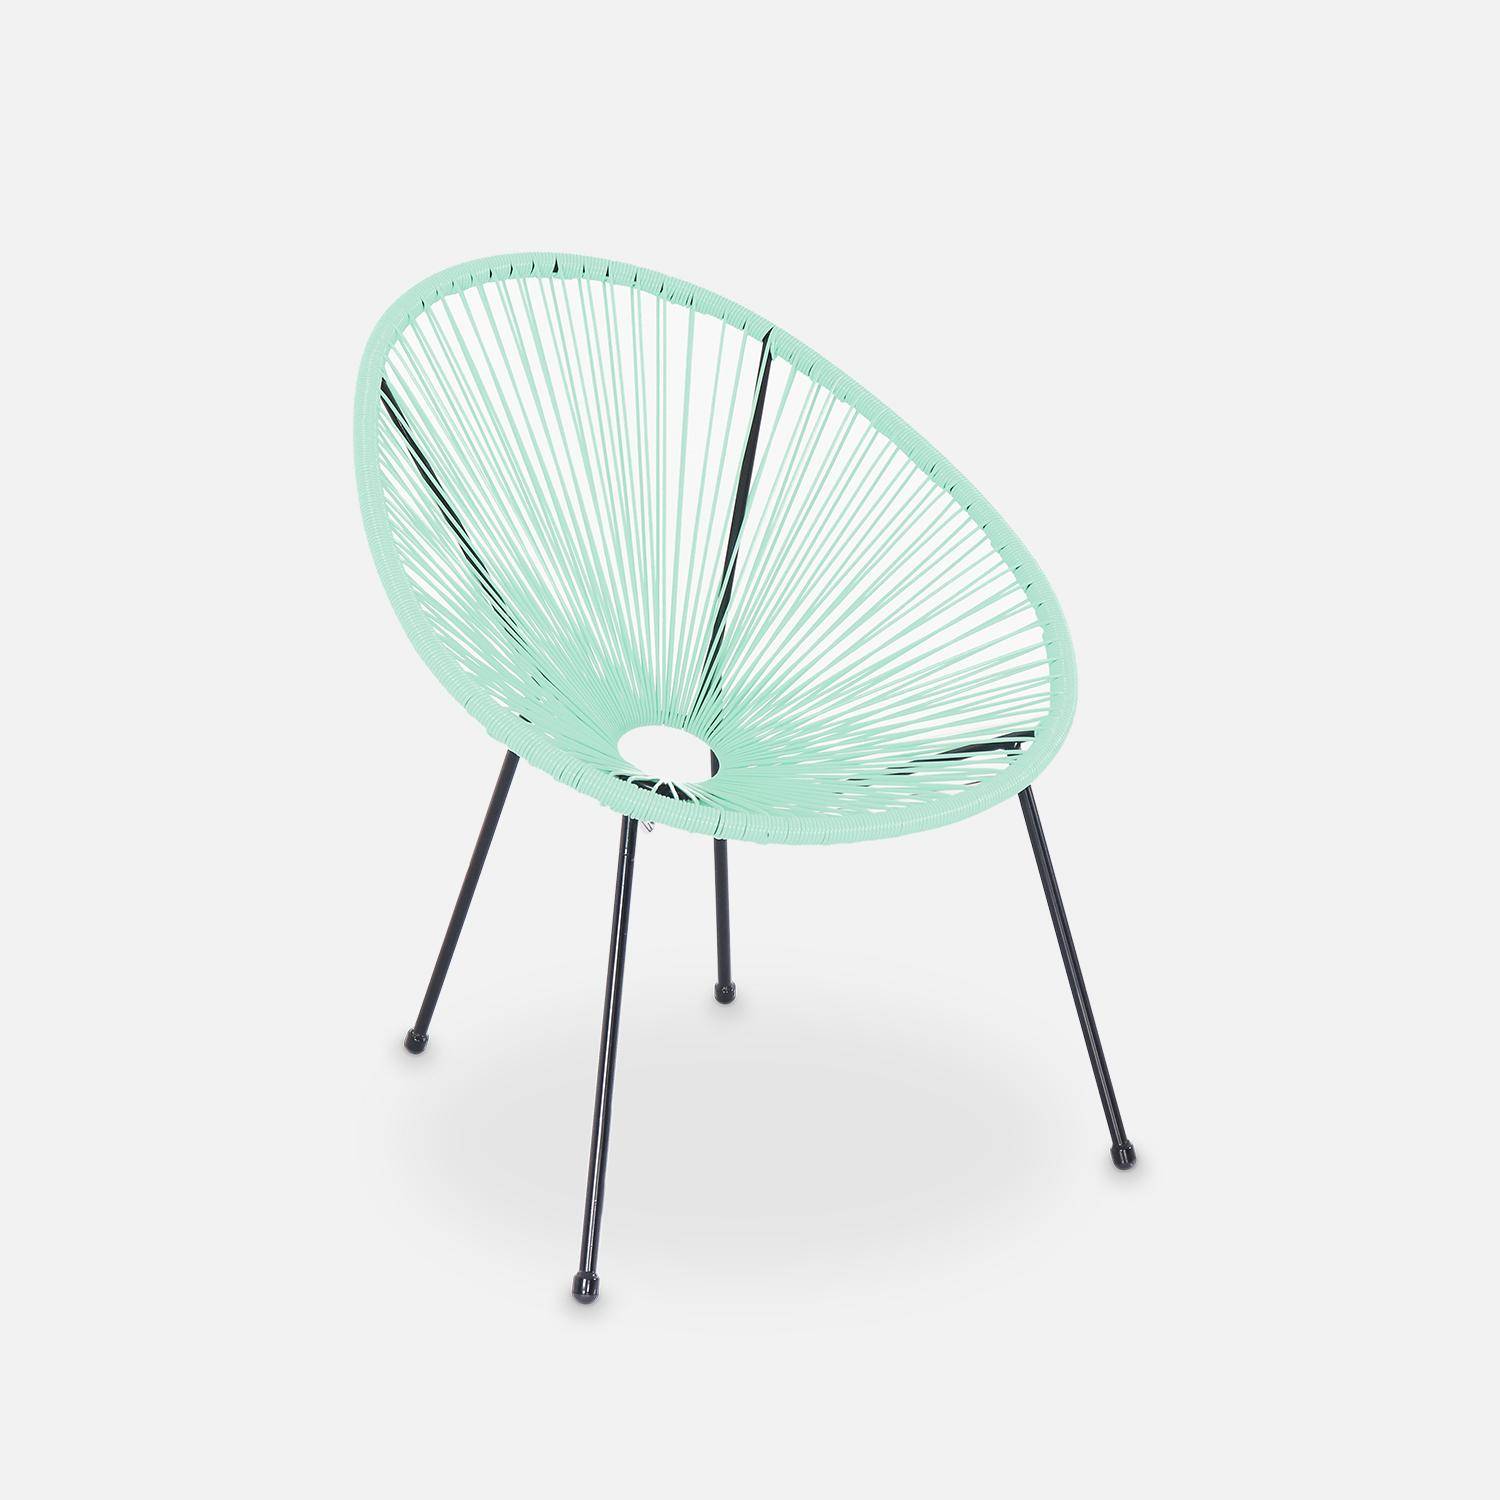 ACAPULCO stoel ei-vormig - Watergroen- Stoel 4 poten retro design, plastic koorden, binnen/buiten Photo2